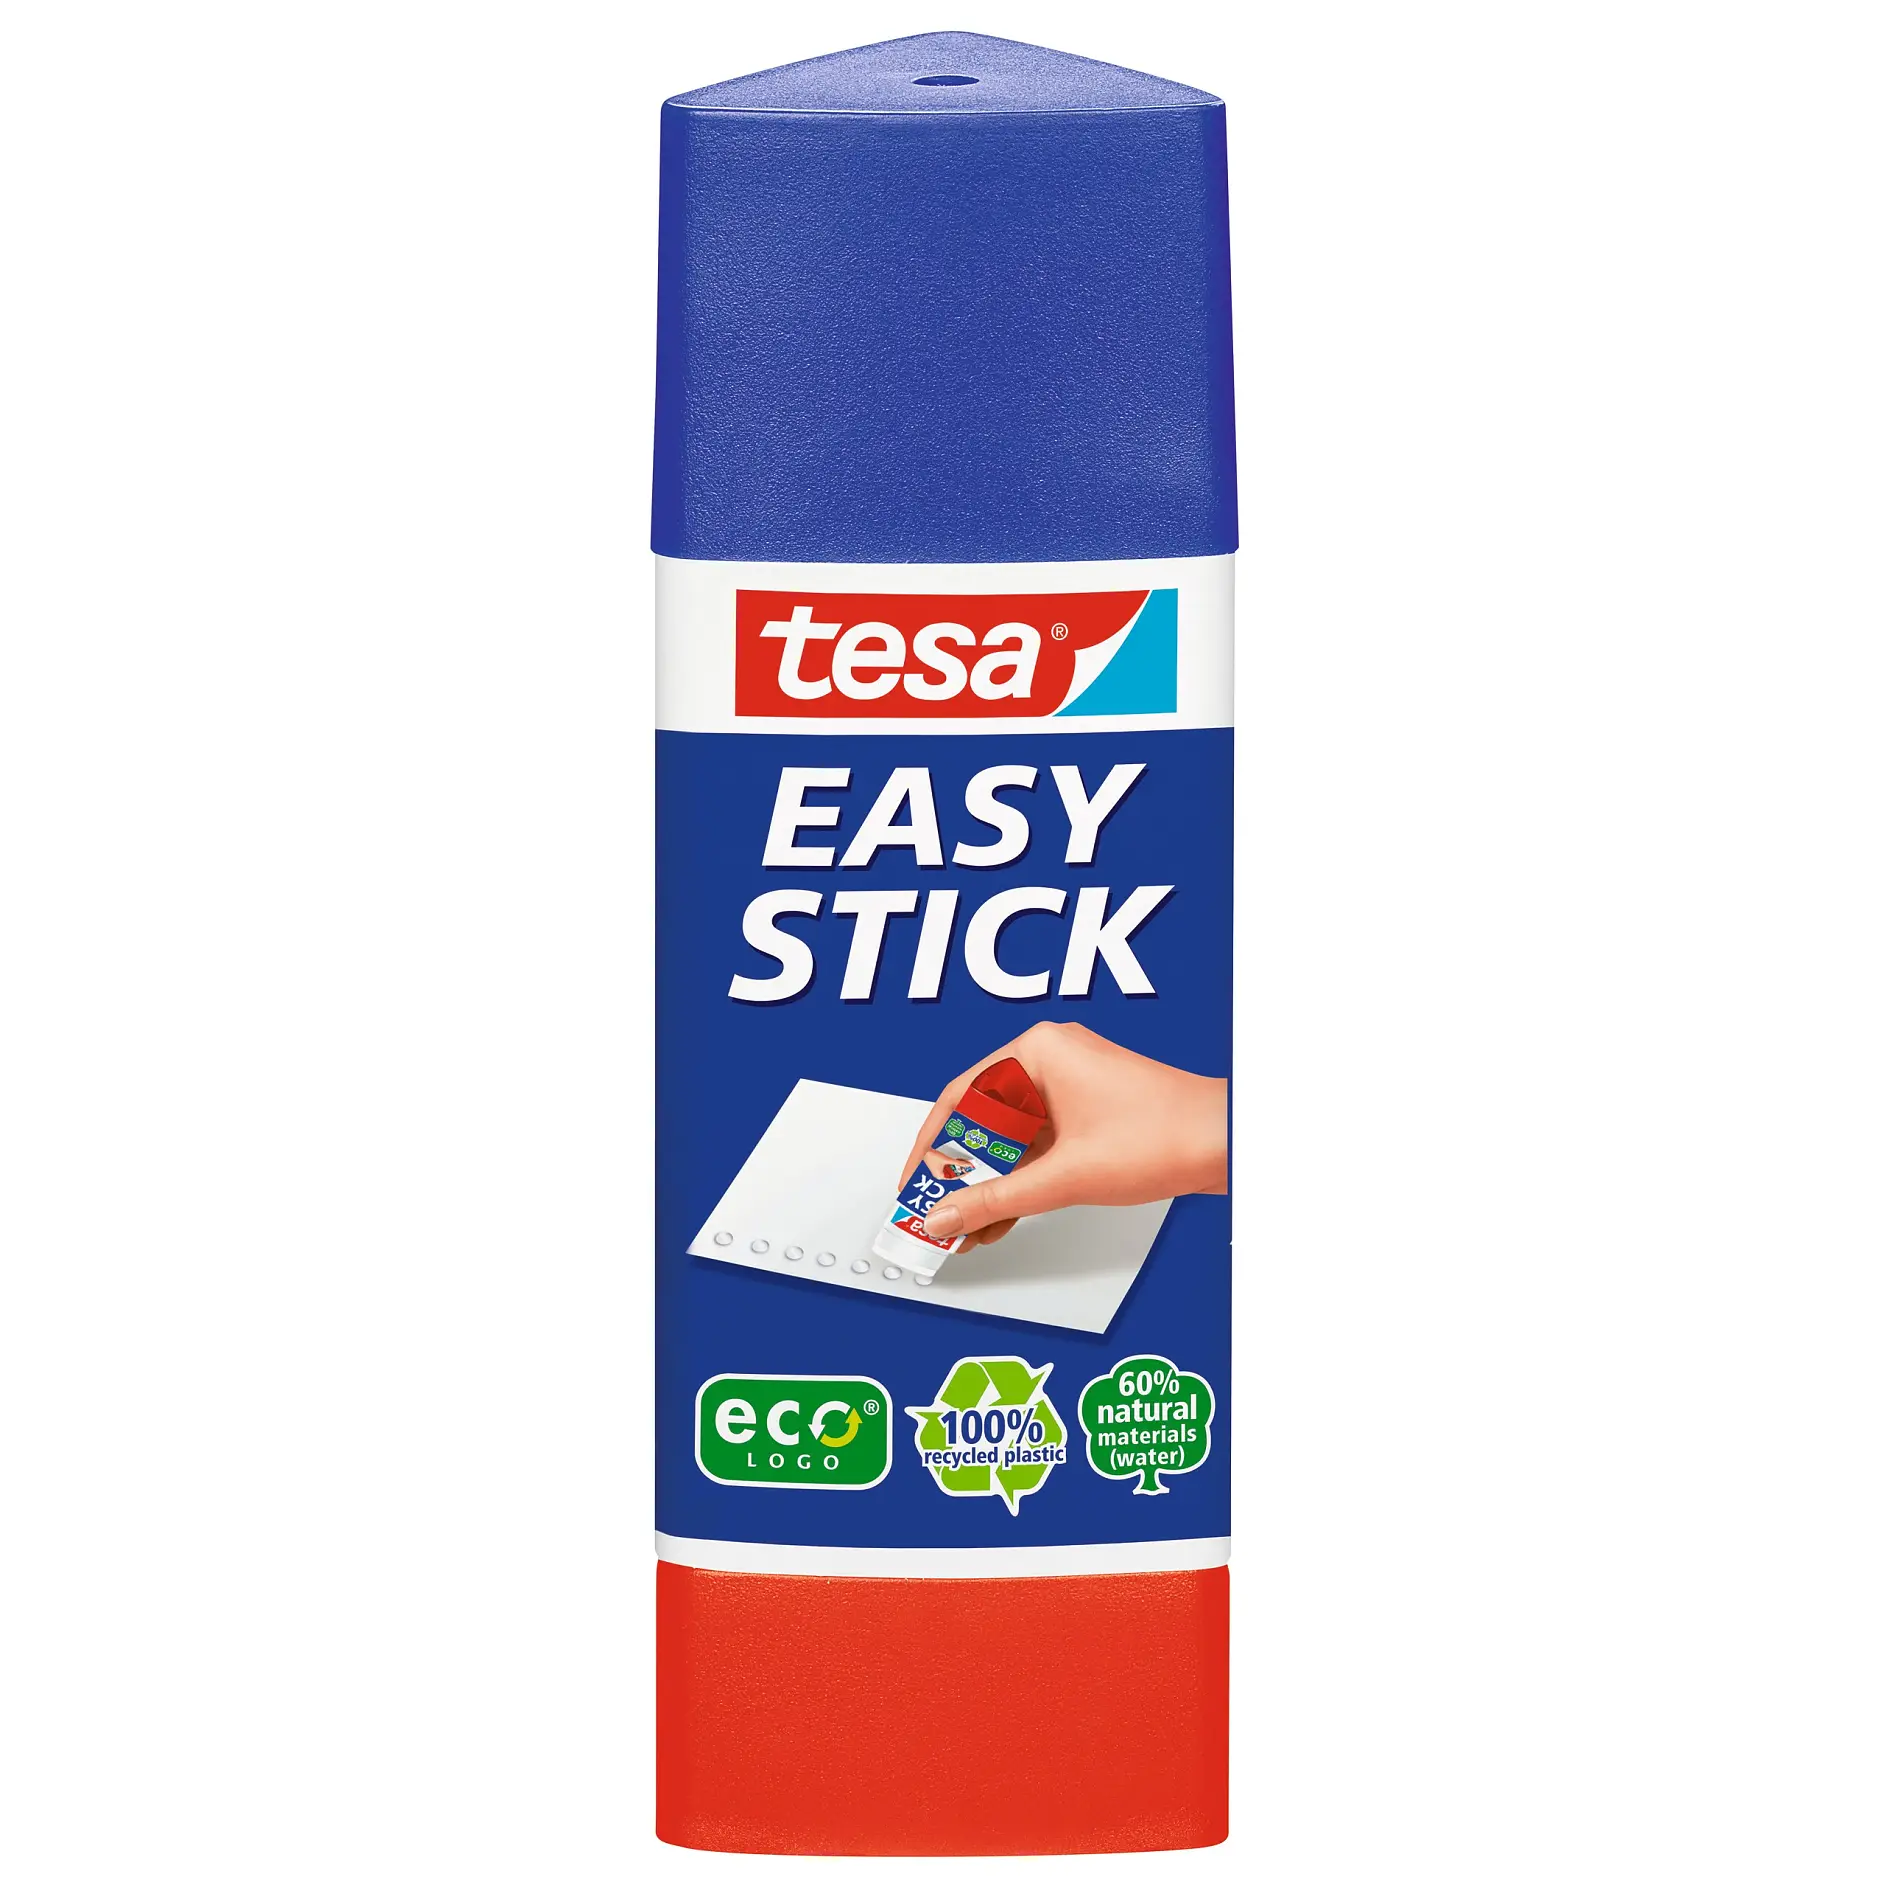 [en-en] tesa Easy stick 12g